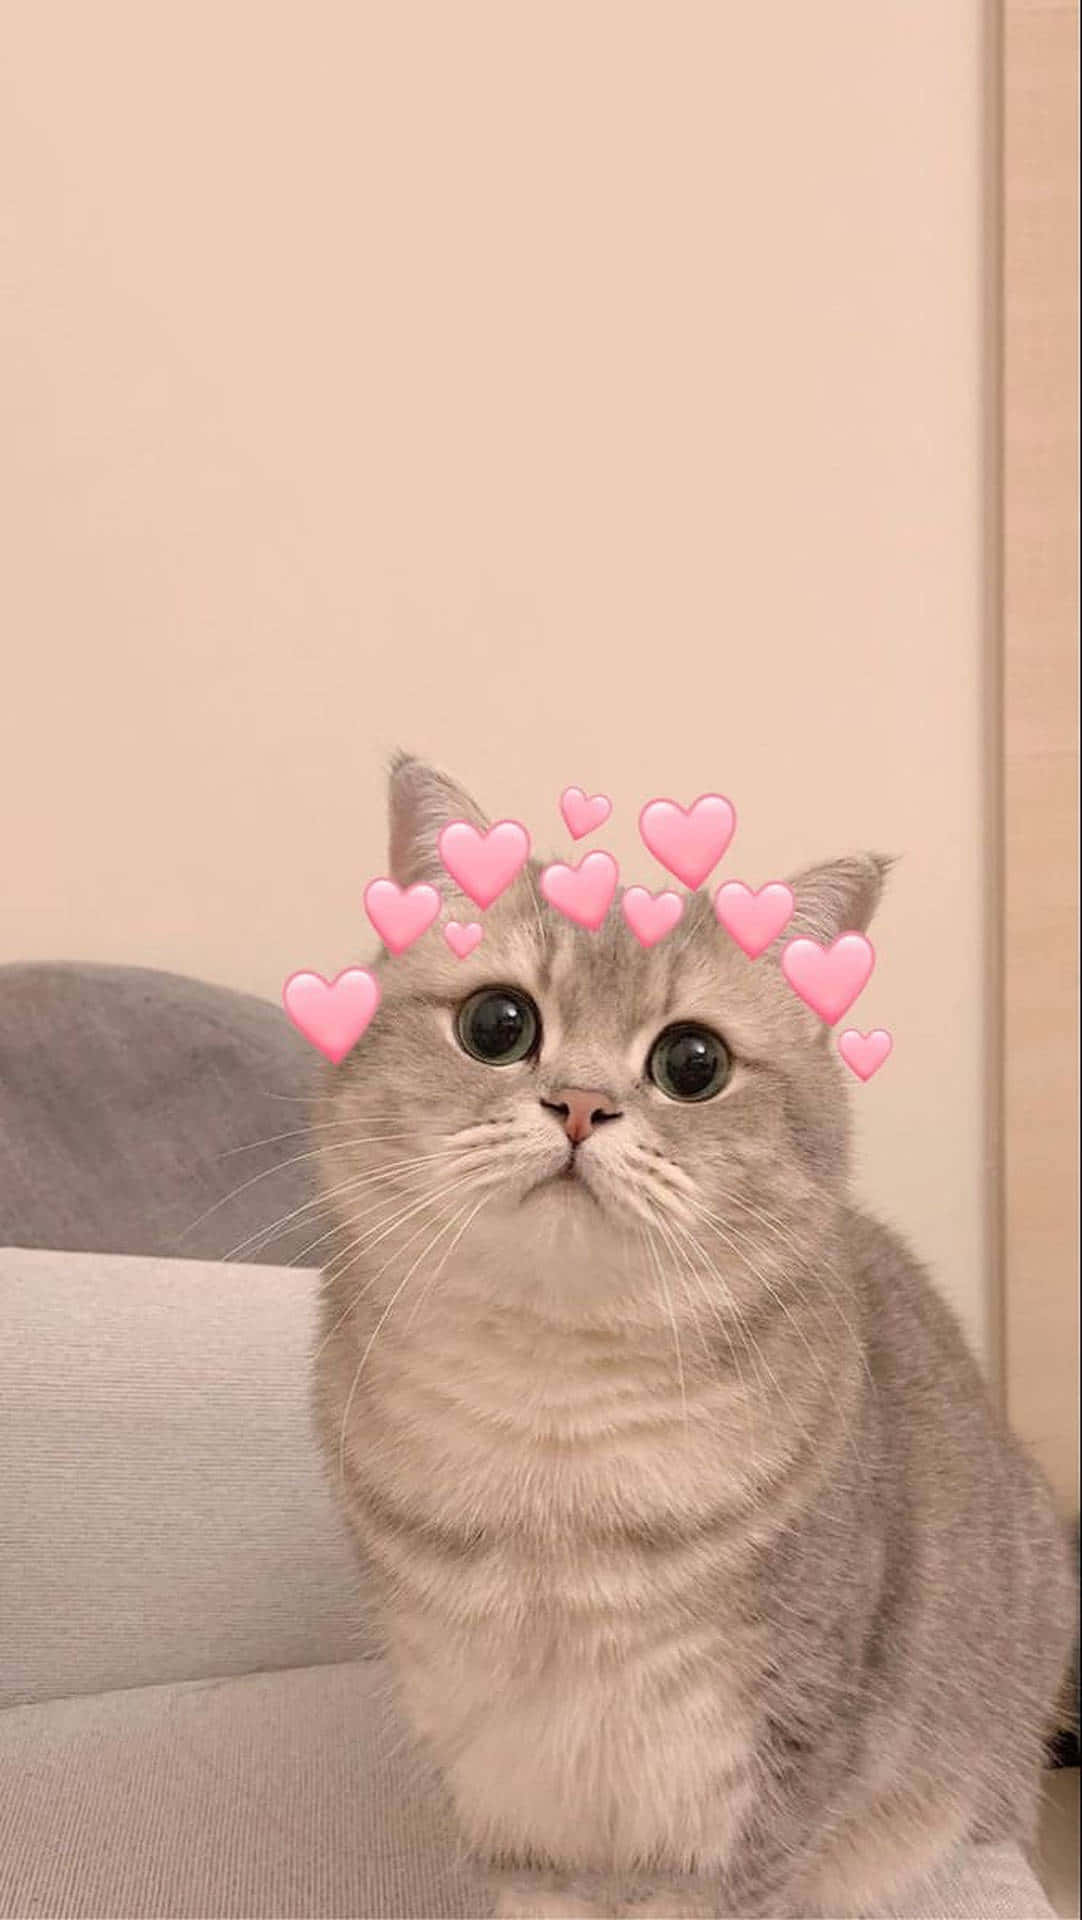 رویایی ترین عکس پروفایل گربه کیوت با قلب های صورتی